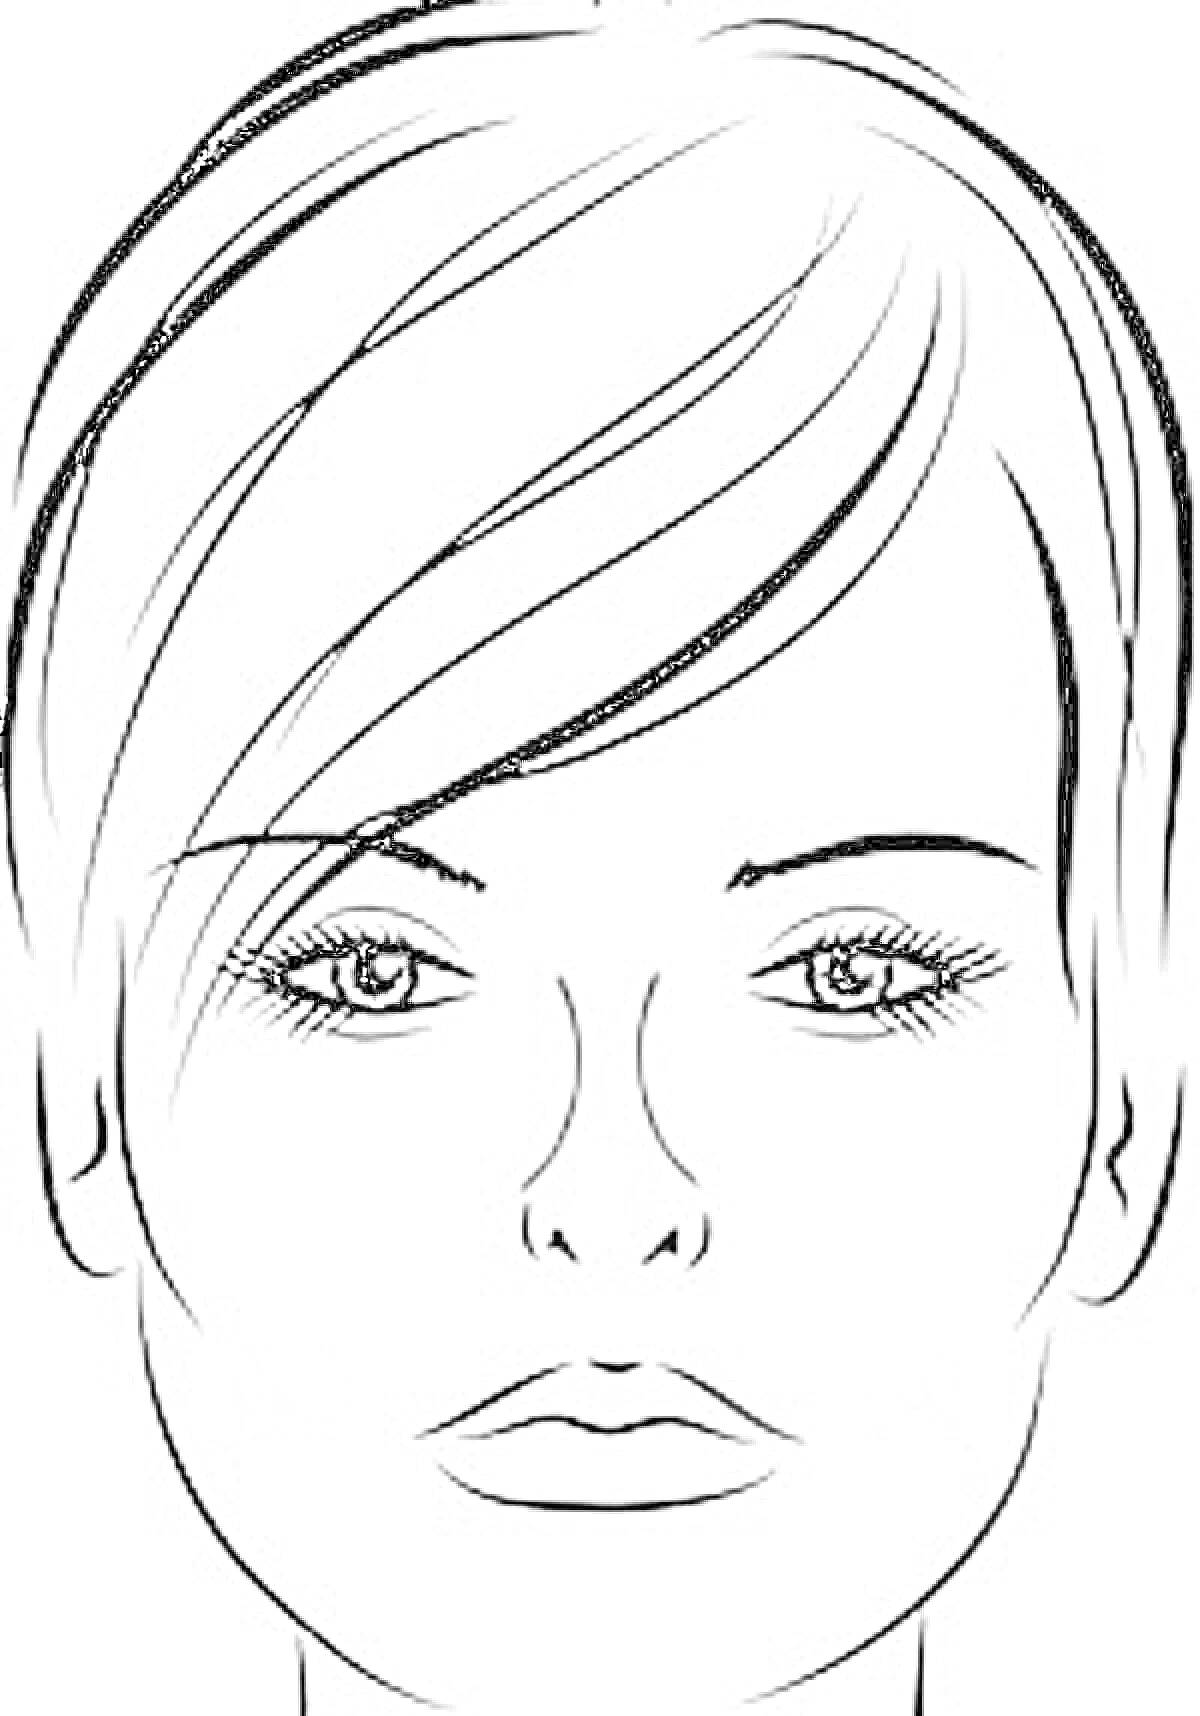 Женская фигура для раскрашивания с акцентом на макияж: глаза с ресницами, губы, волосы